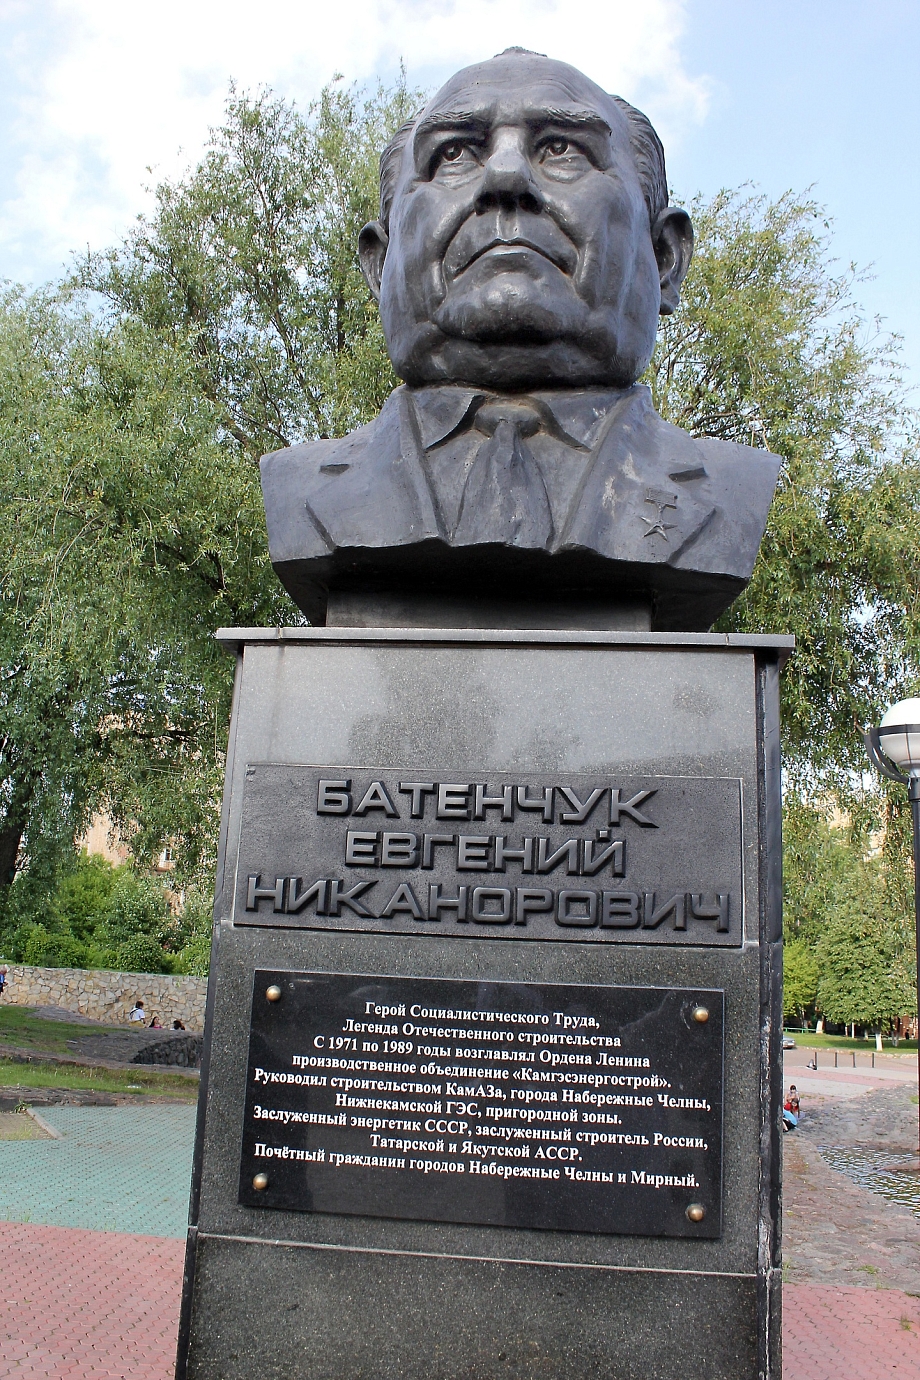 Сегодня 110 лет со дня рождения первостроителя Евгения Батенчука